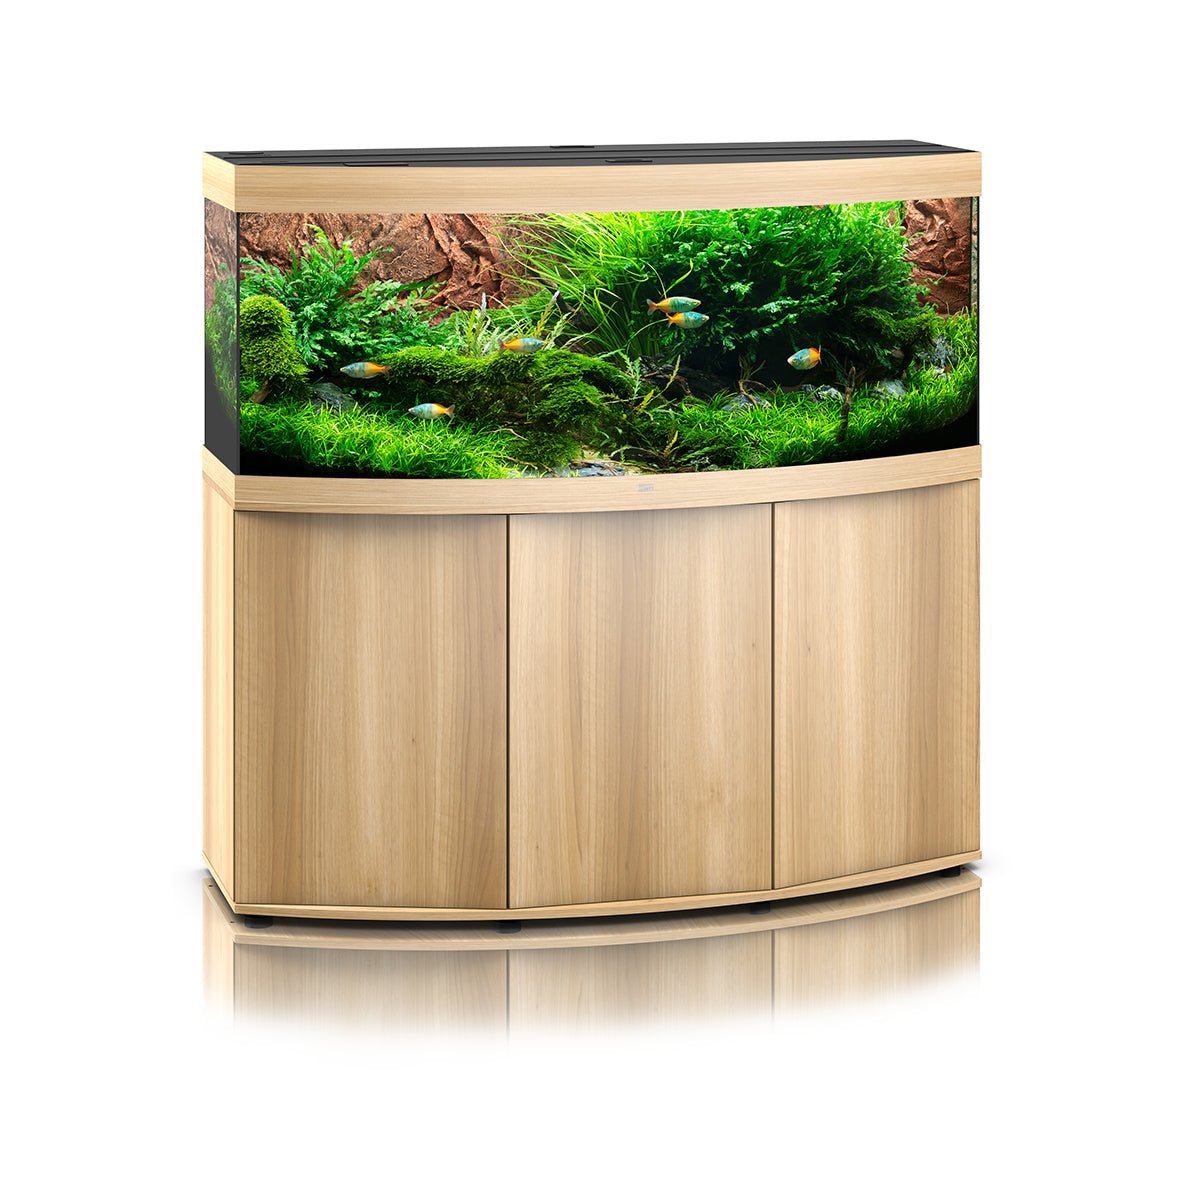 Juwel Vision 450 LED Aquarium and Cabinet (Light Wood) - Charterhouse Aquatics